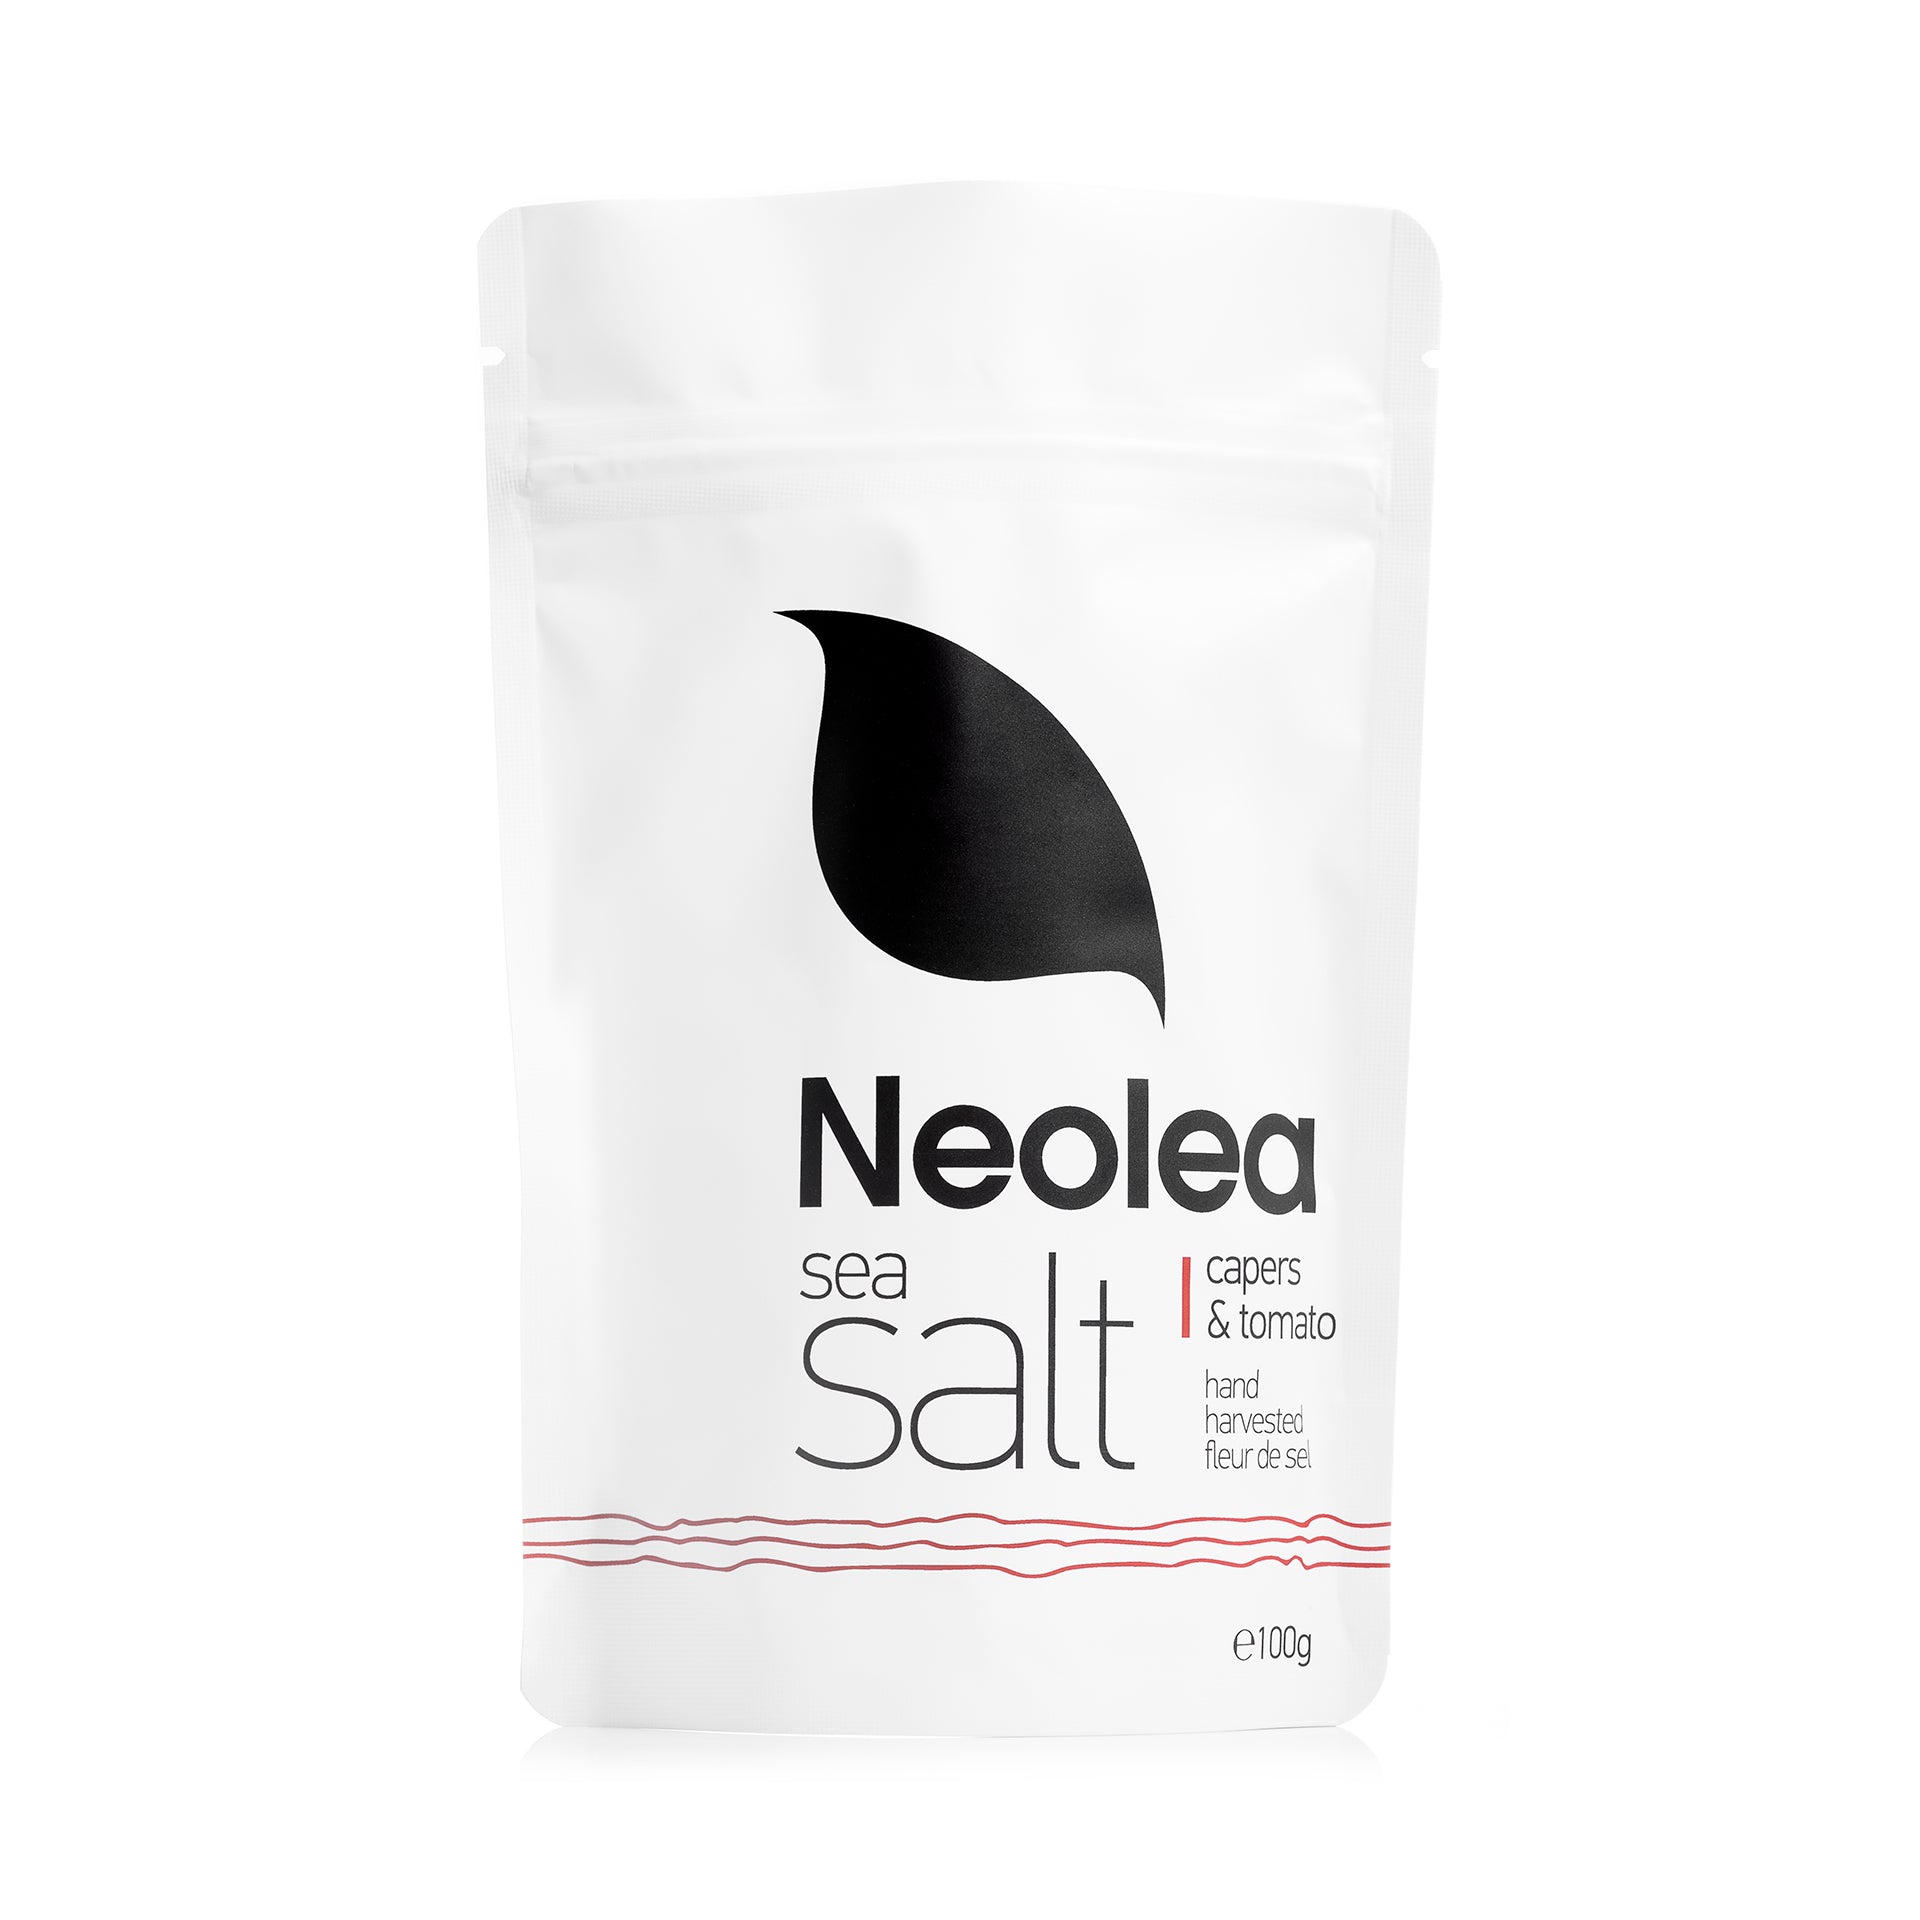 Capers & Tomato Sea Salt Refill Bag